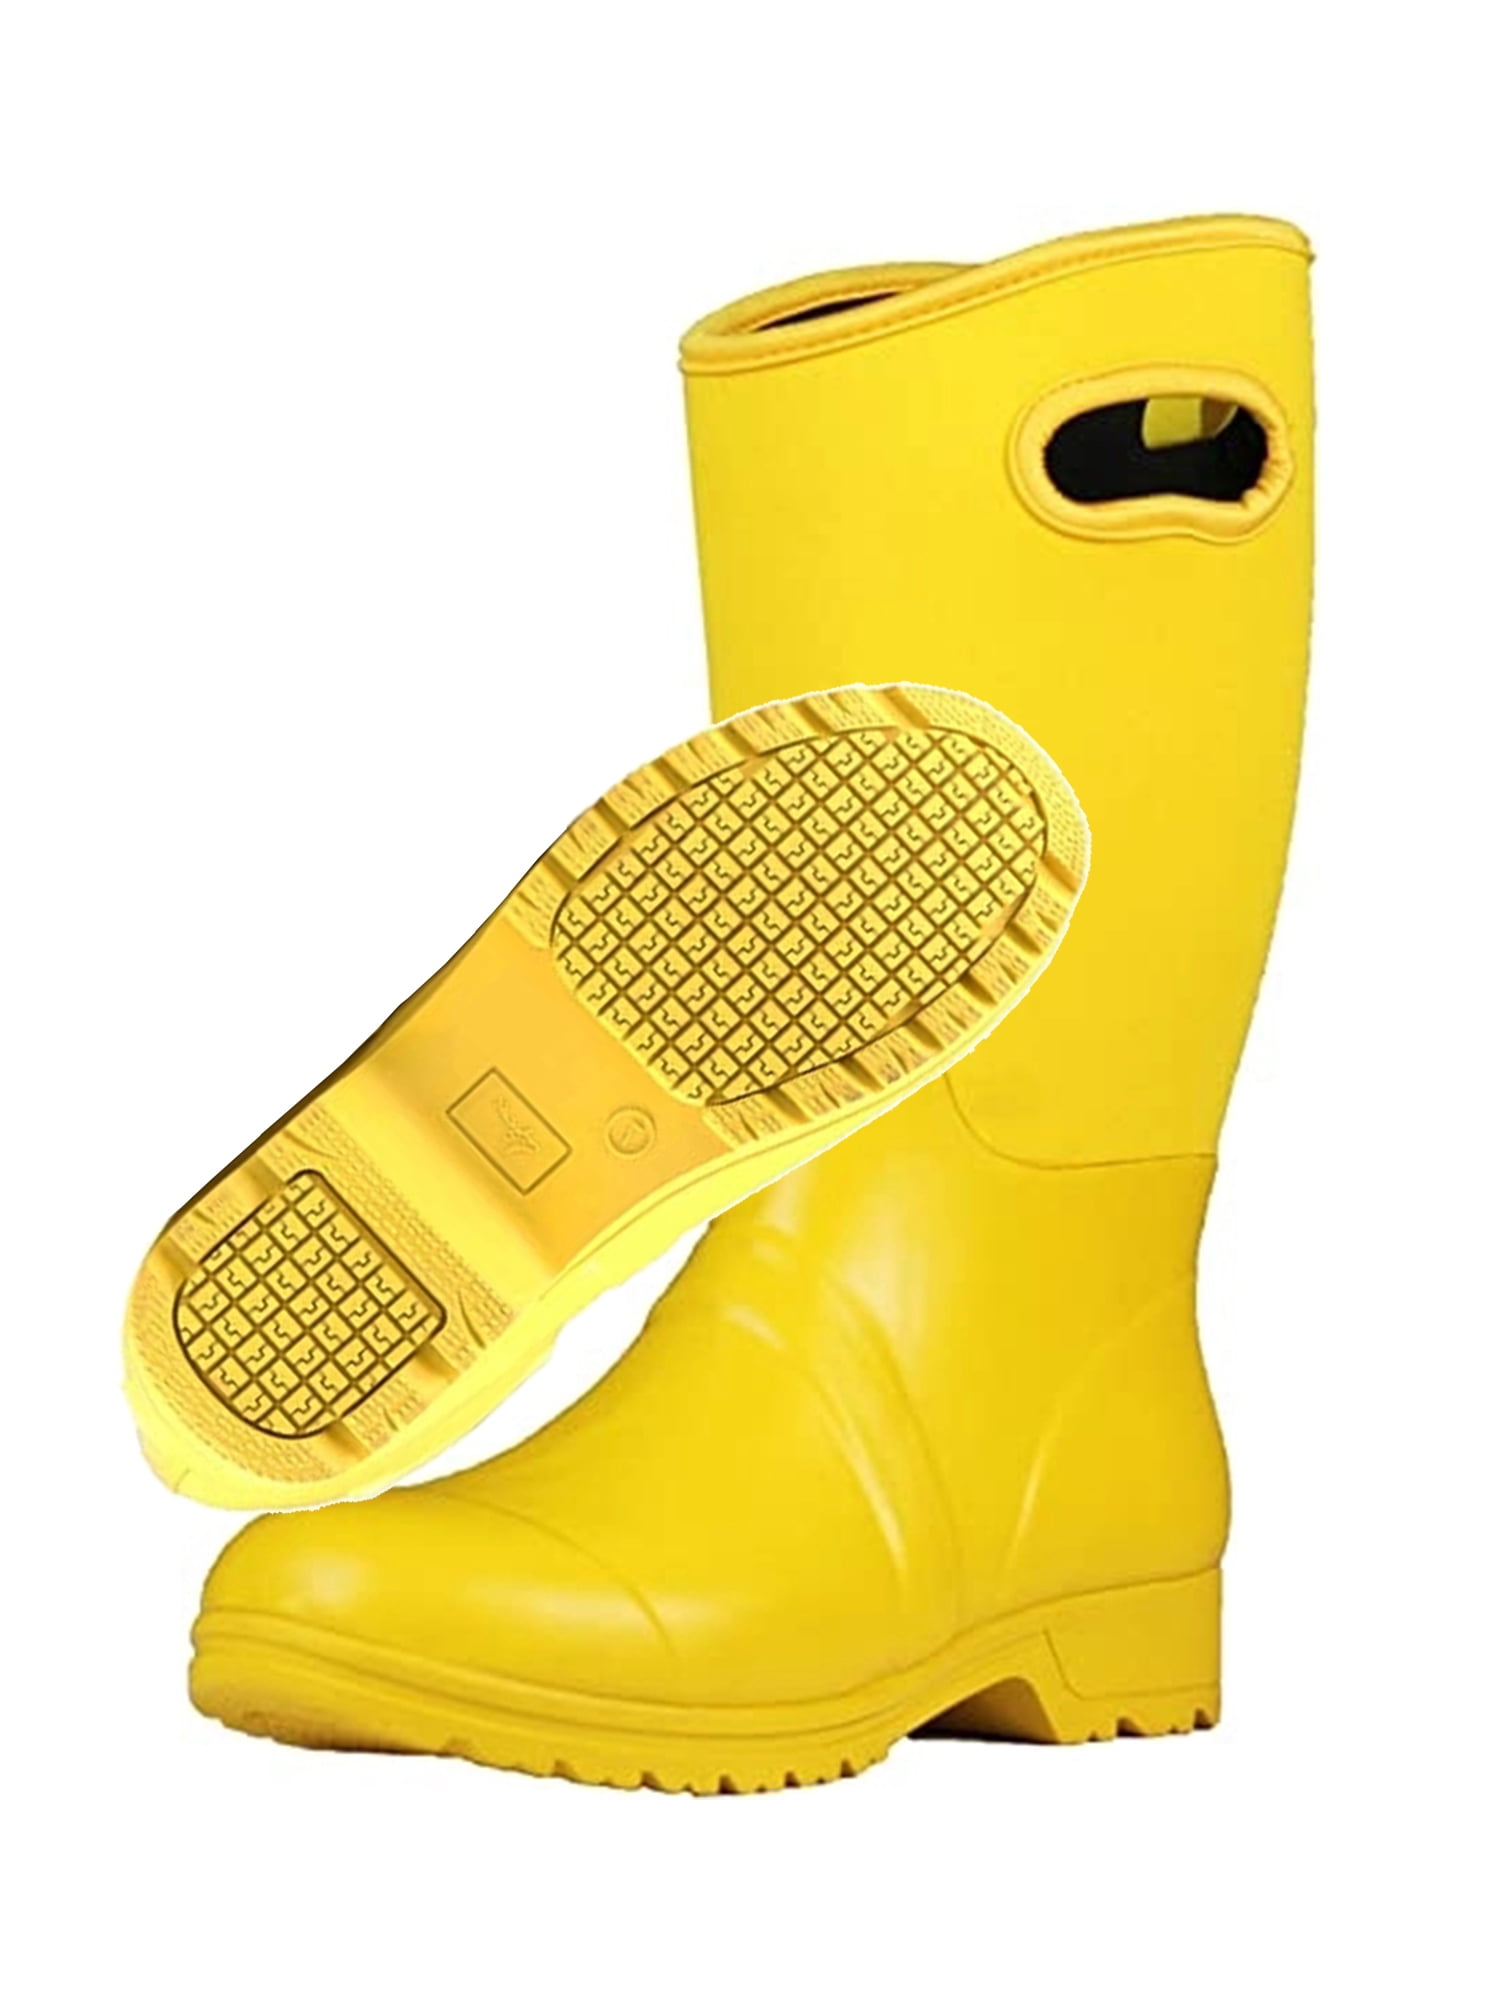 Neoprene Rubber Waterproof Rain Boots 